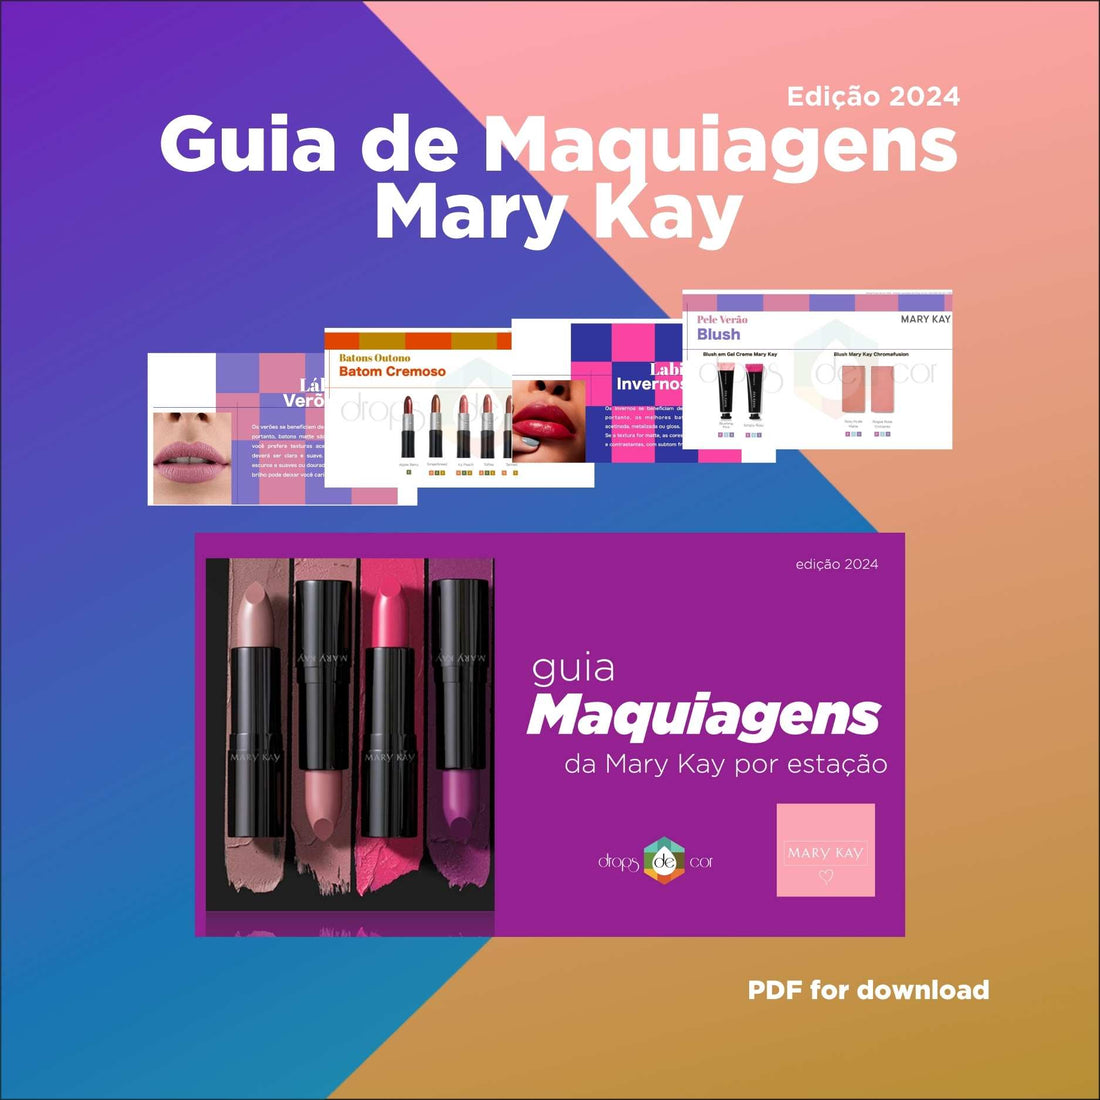 Guia de Maquiagens por Estação - Mary Kay - Edição 2024